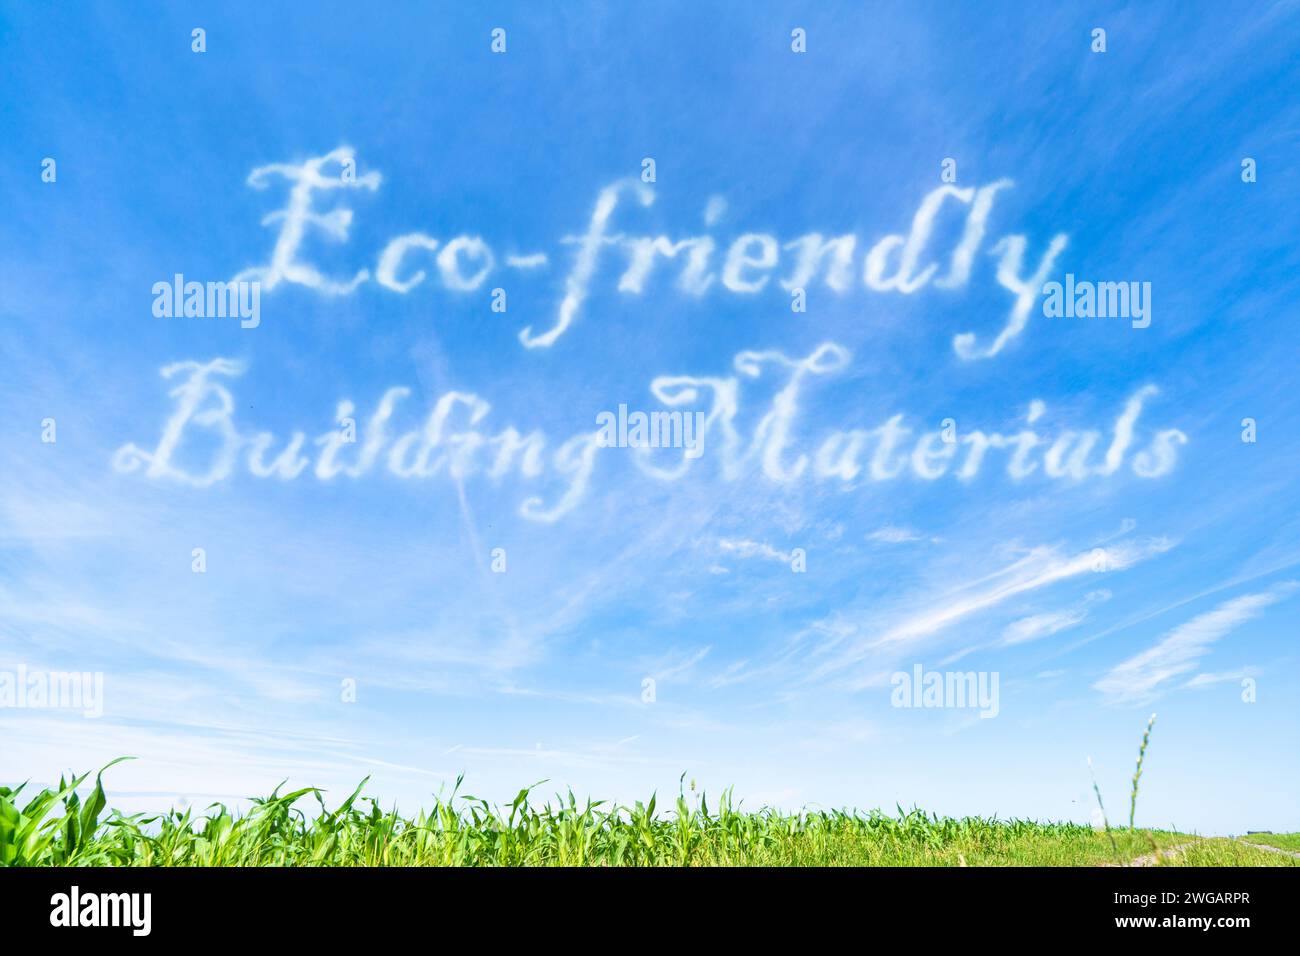 Umweltfreundliche Baustoffe: Baumaterialien mit geringer Umweltbelastung und hoher Nachhaltigkeit. Stockfoto